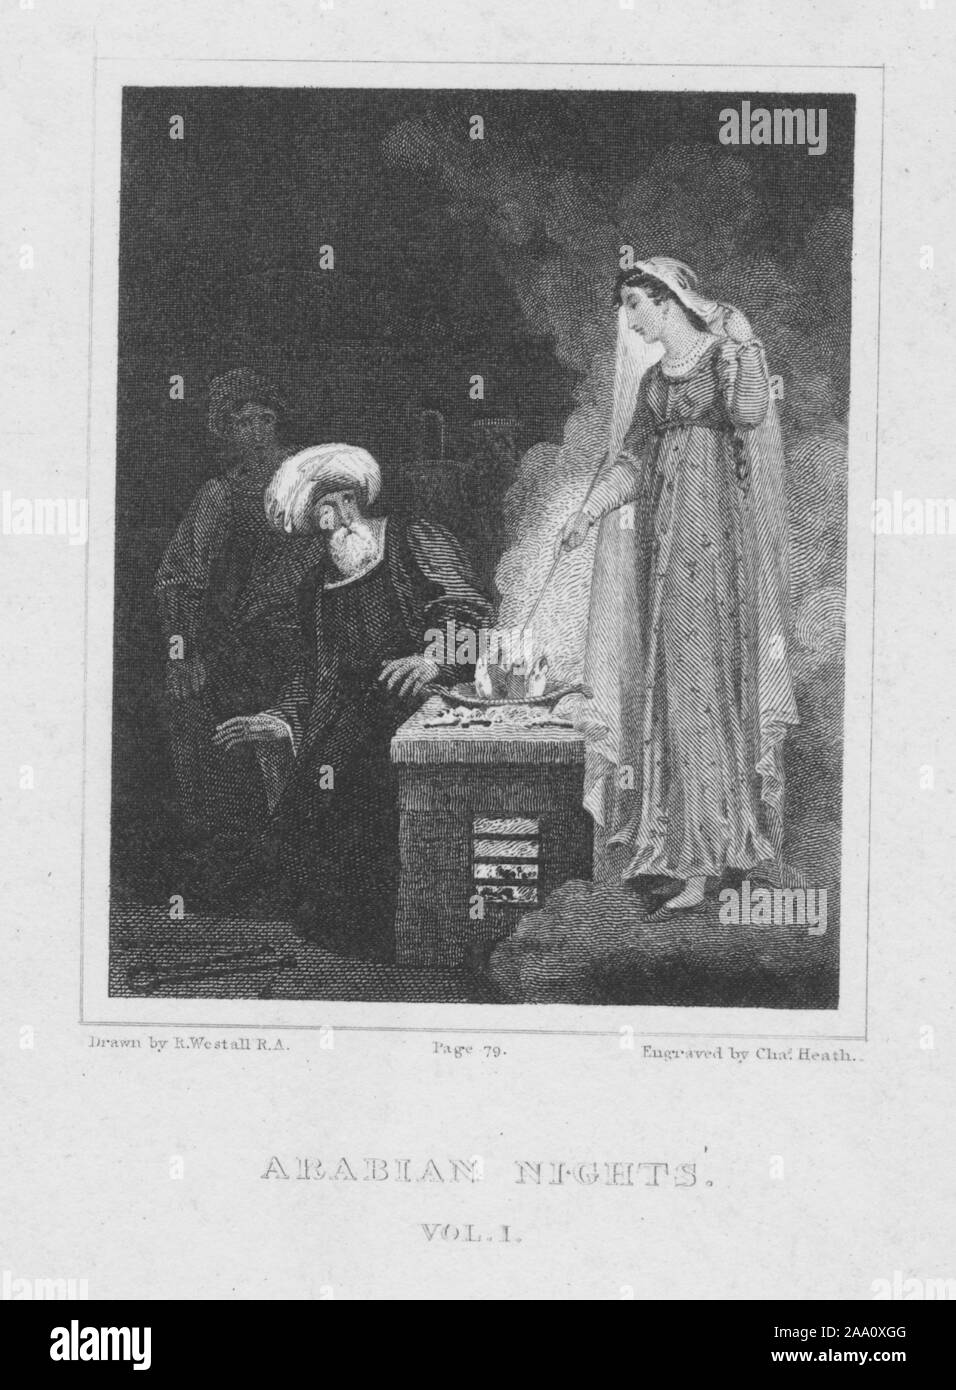 Gravierte Darstellung einer Szene aus dem Buch '1001 Nacht' mit einer jungen Dame rühren Fisch in einer Pfanne mit zwei Männer in Turbanen auf in Erstaunen, von Illustrator Richard Westall, von Thomas Davidson, 1819 veröffentlicht. Von der New York Public Library. () Stockfoto